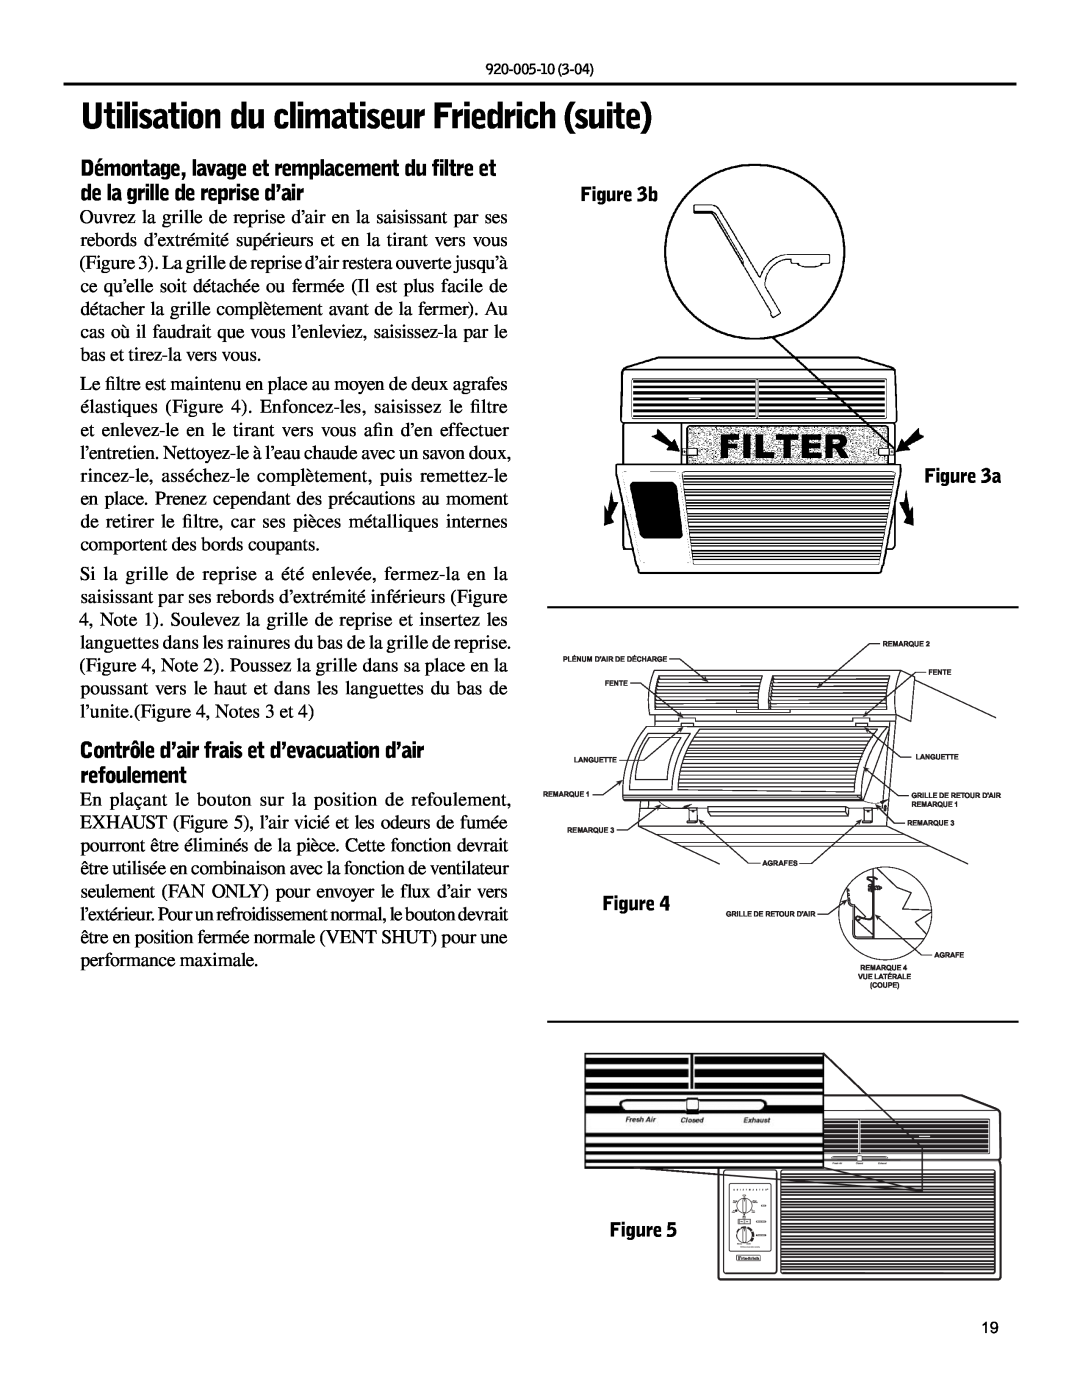 Friedrich KM20, KS10 manual Utilisation du climatiseur Friedrich suite 